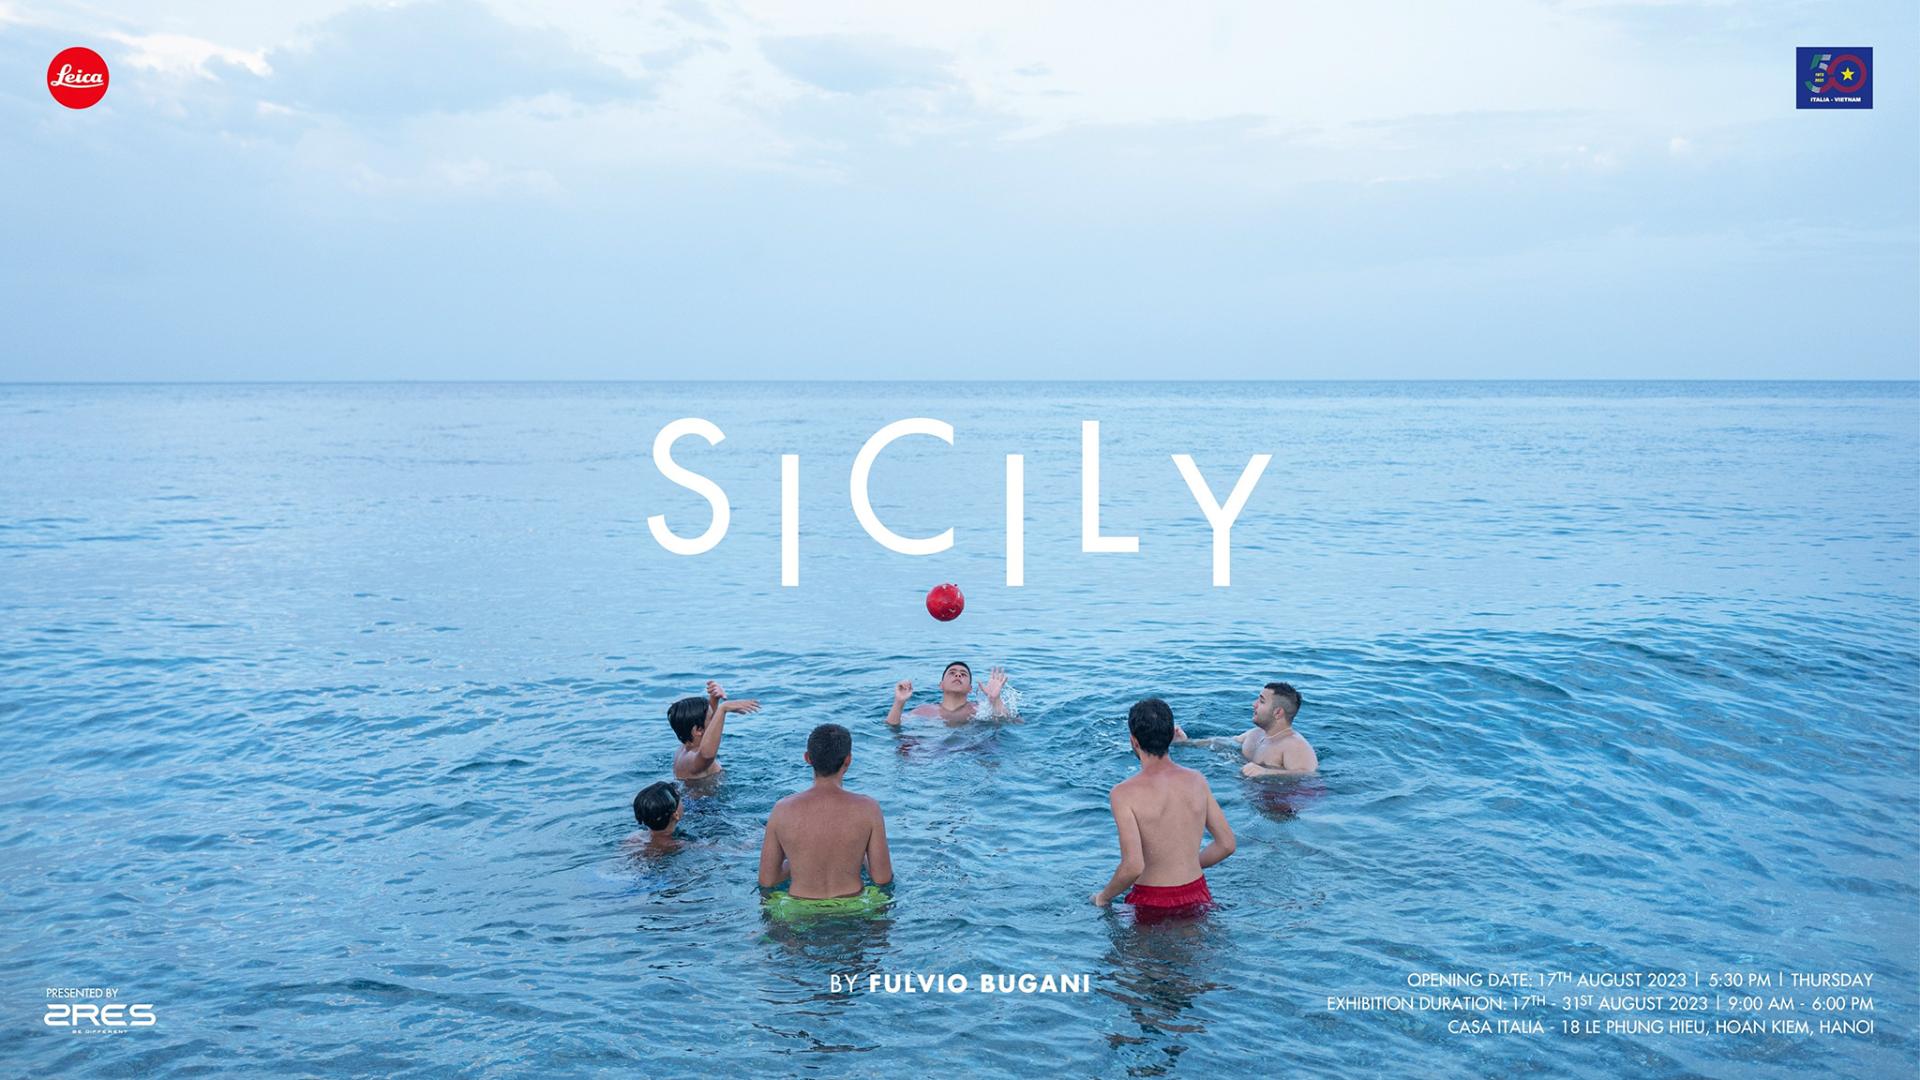 LEICA EXHIBITION | SICILY BY FULVIO BUGANI